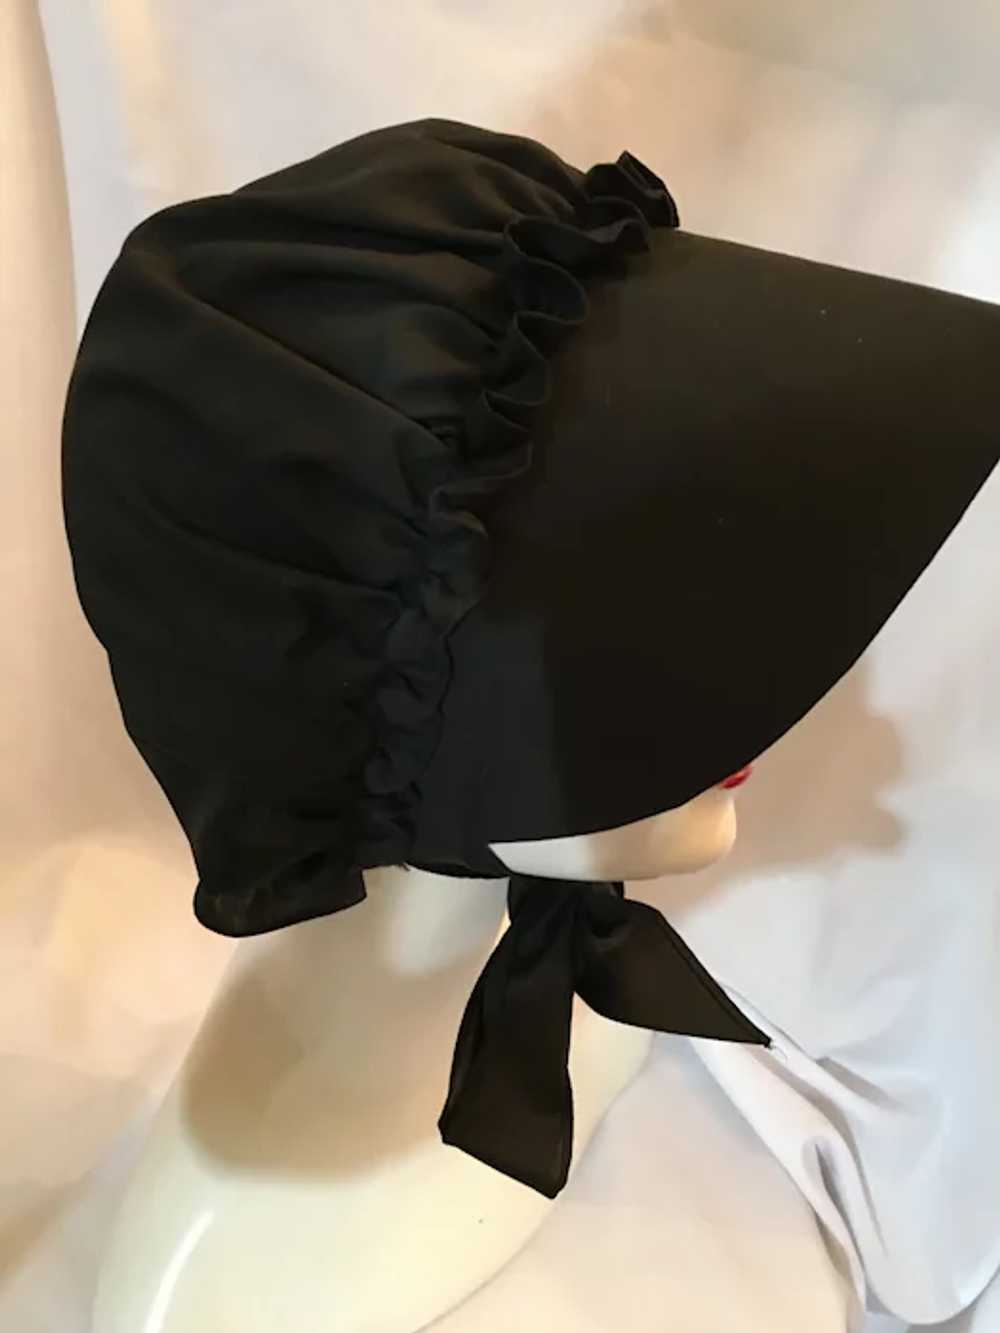 Stitched Cotton Ladies Amish Black Bonnet - image 3